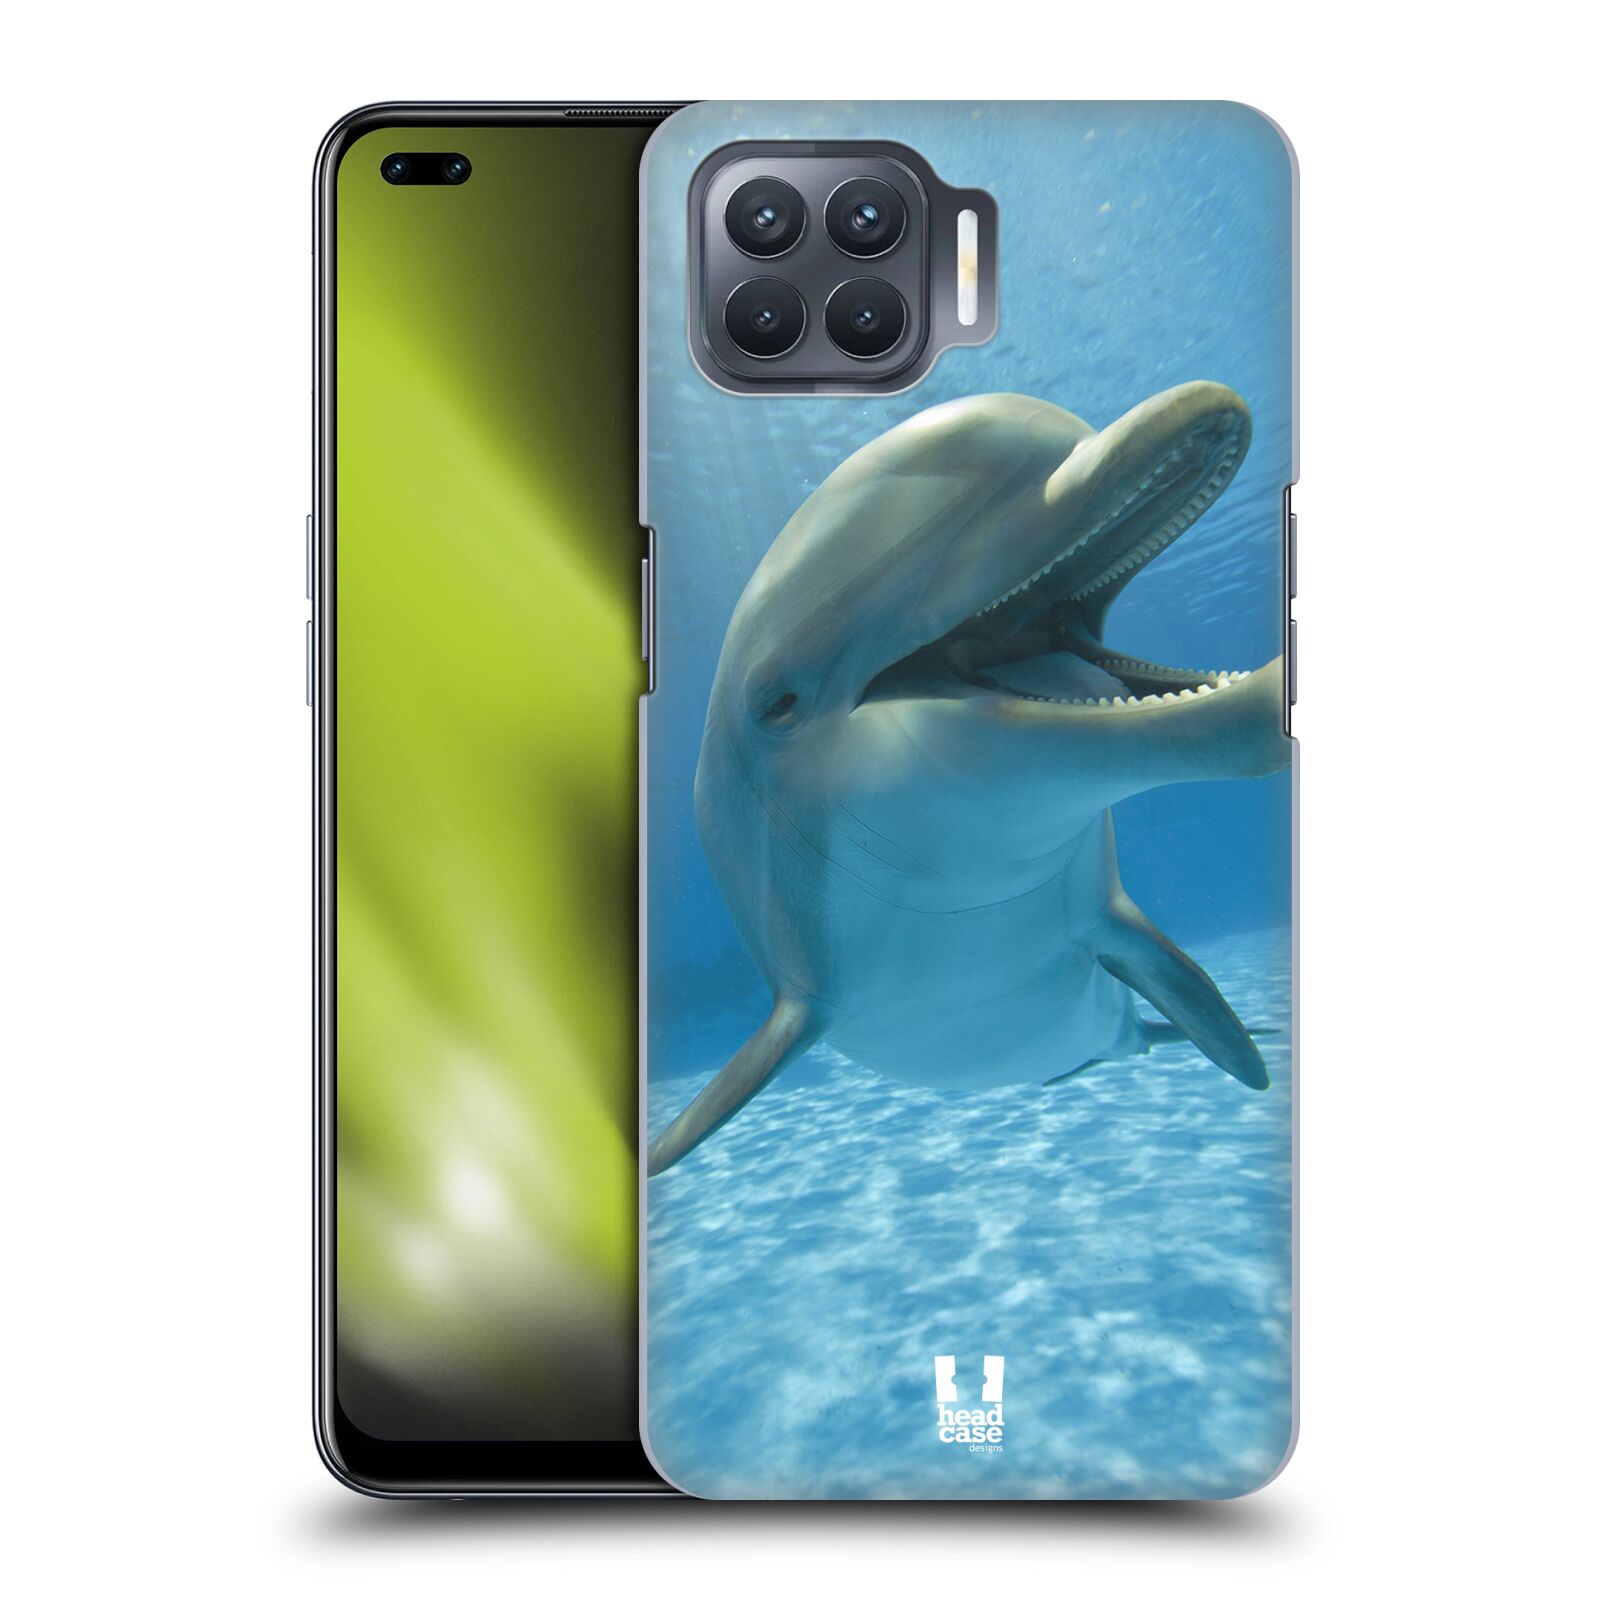 Zadní obal pro mobil Oppo Reno 4 LITE - HEAD CASE - Svět zvířat delfín v moři